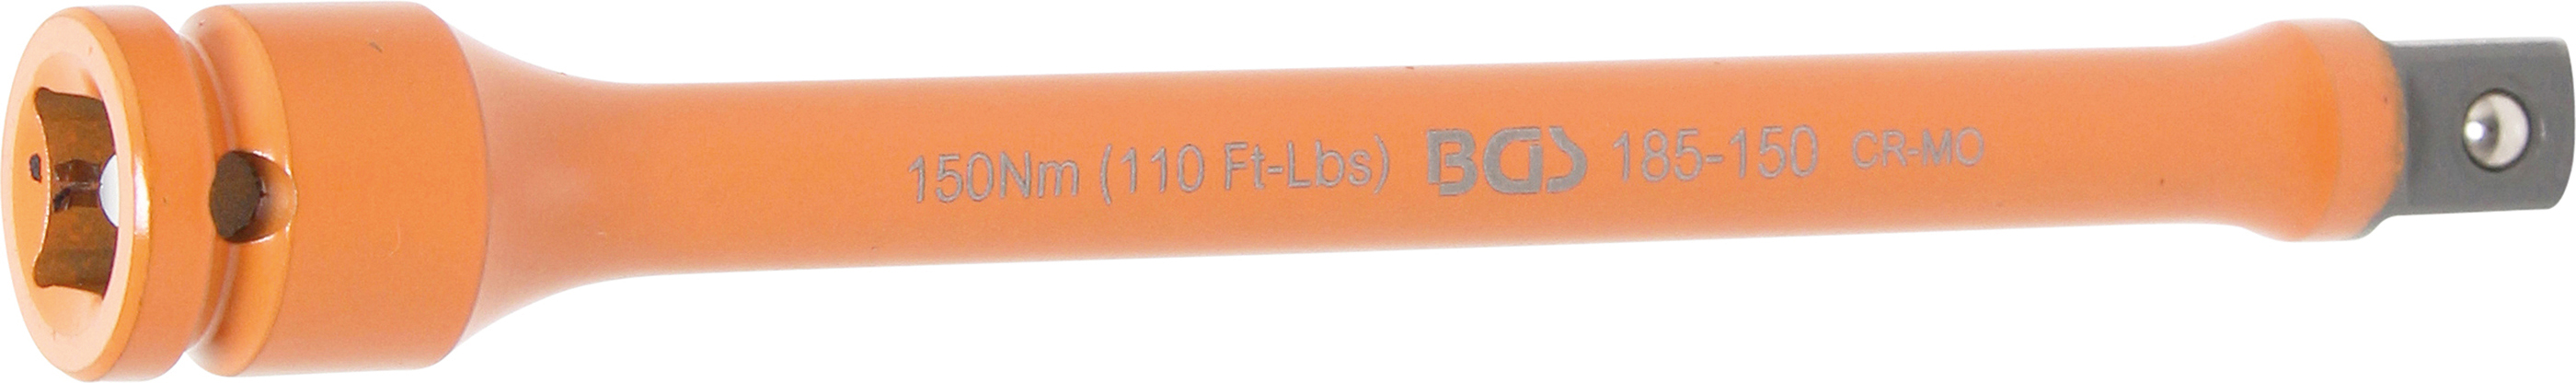 BGS 185-150 Dispozitiv special pentru strangerea prezoanelor de roti, 150 Nm